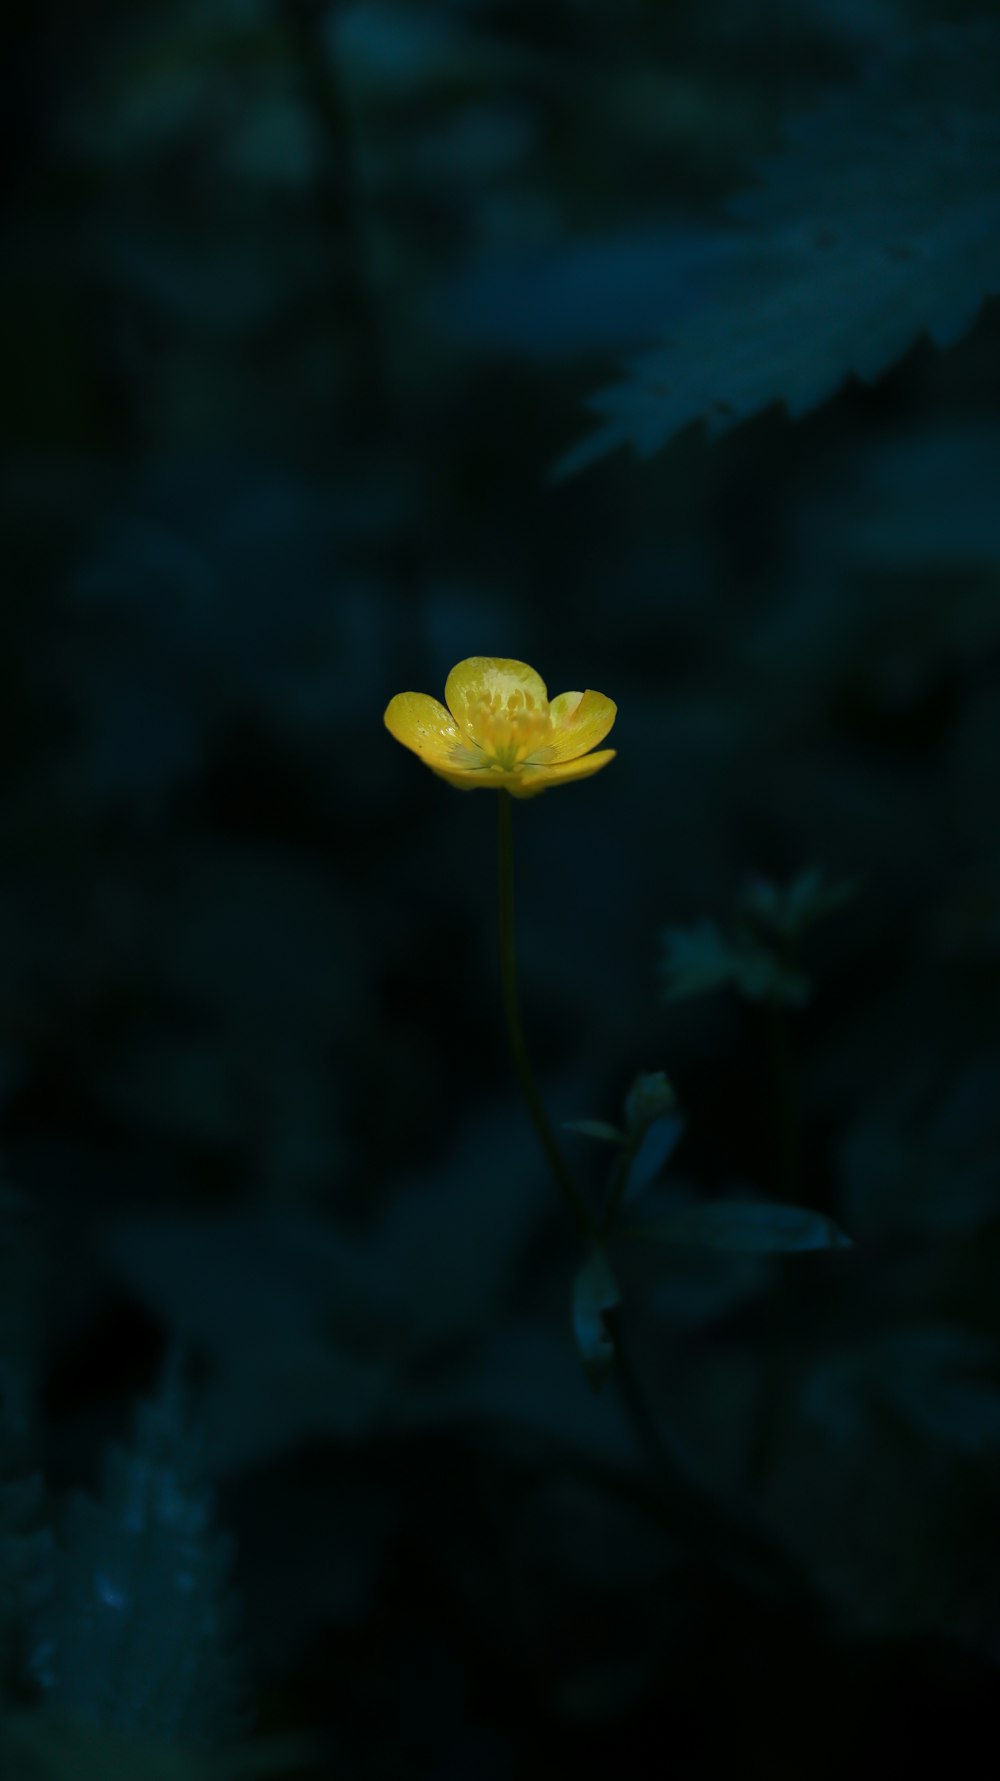 eine einzelne gelbe Blume im Dunkeln